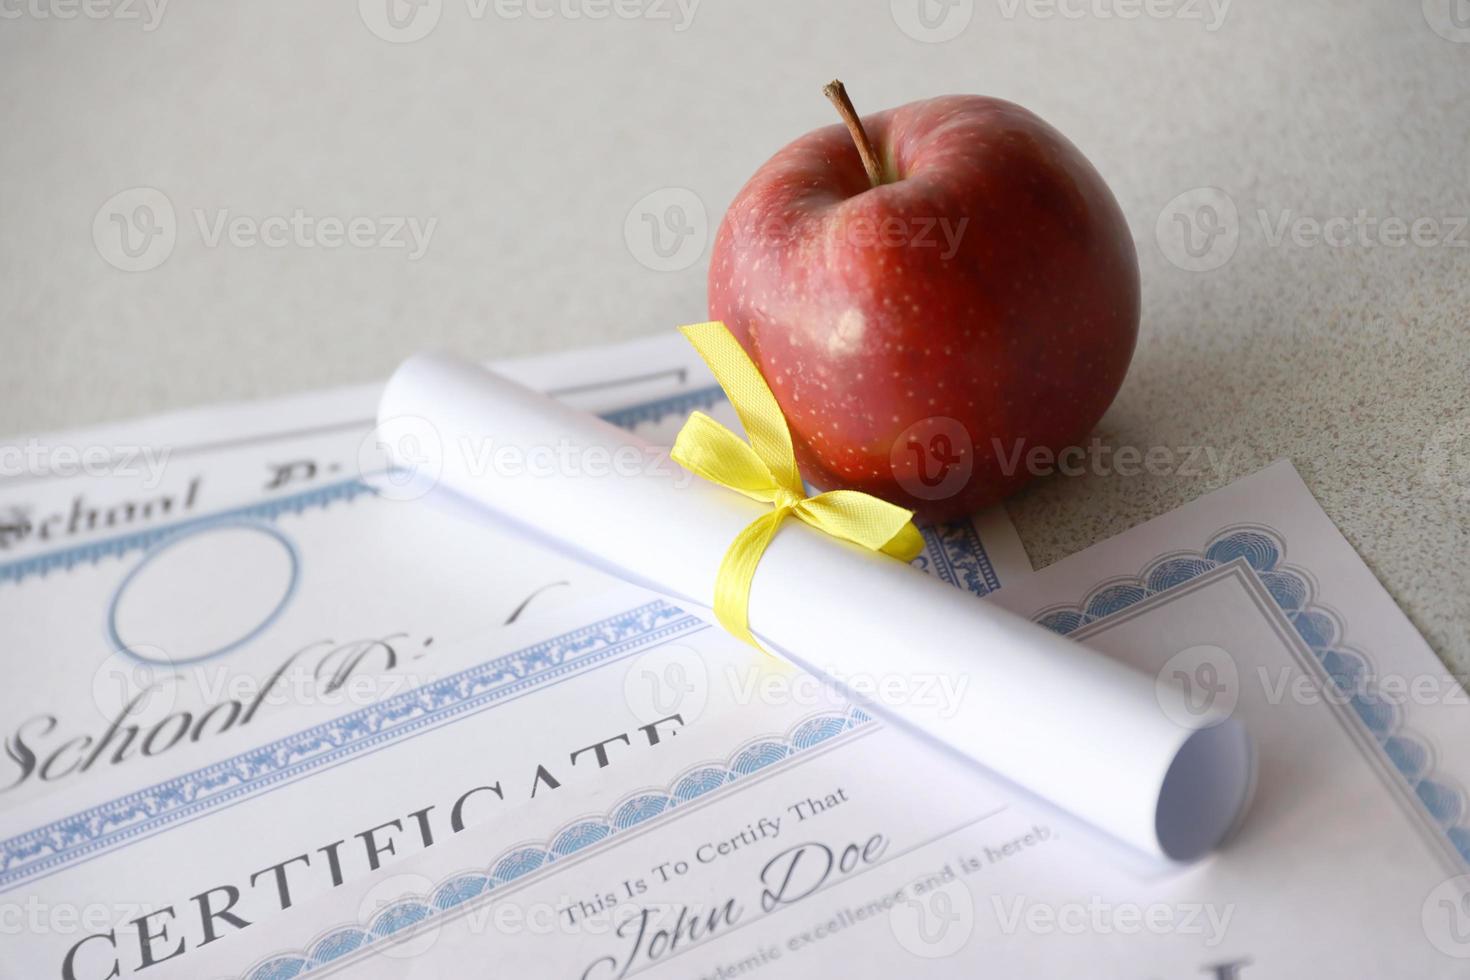 en hedra rulla erkännande, certifikat av prestation och hög skola diplom lögner på tabell med små skrolla och röd äpple. utbildning dokument foto